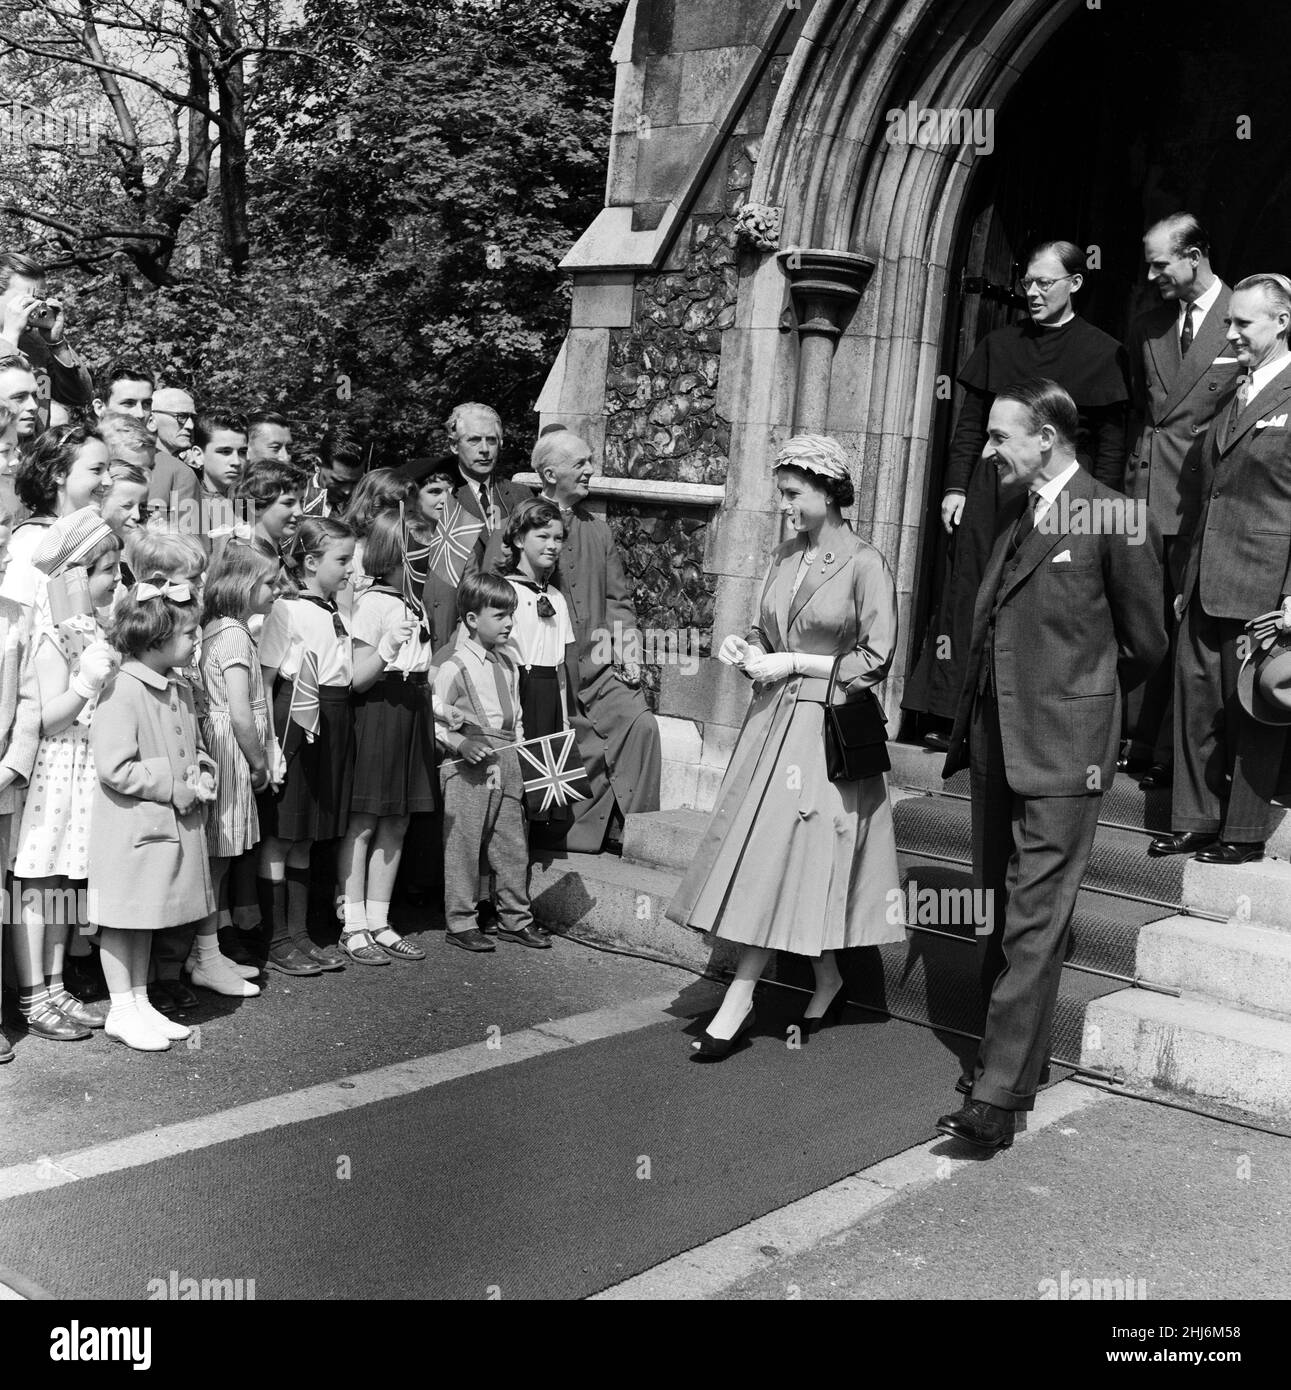 Königin Elizabeth II. Und Prinz Philip, Herzog von Edinburgh, besuchen Dänemark. Königin Elizabeth besucht die Englische Kirche von St. Alban's in Kopenhagen. Mit ihr ist der britische Botschafter Sir Roderick Barclay. 23rd Mai 1957. Stockfoto